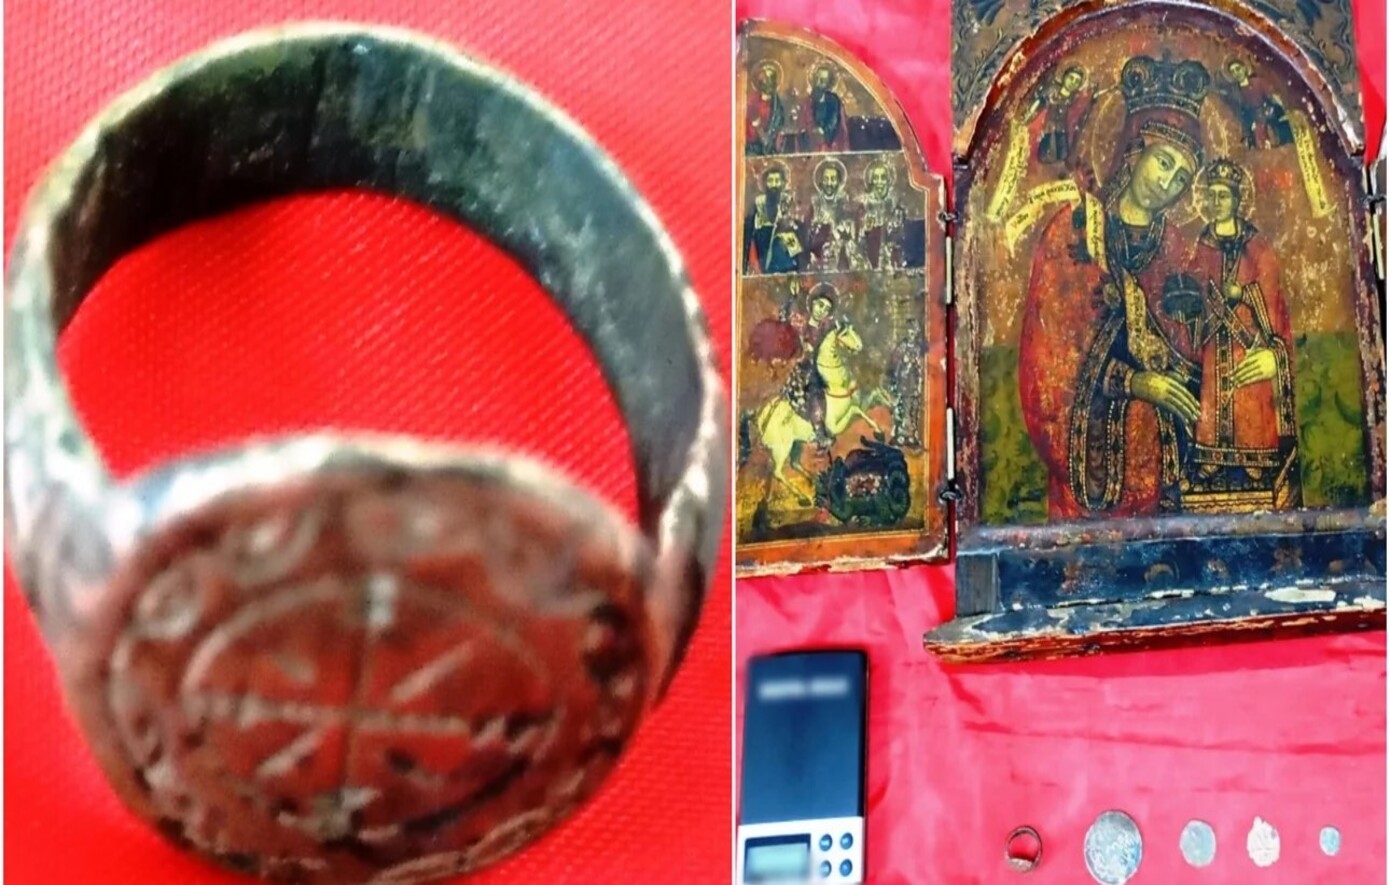 35χρονος έκρυβε στο σπίτι του στη Θεσσαλονίκη δαχτυλίδι με διάκοσμο βυζαντινής εποχής, αγιογραφία και νομίσματα